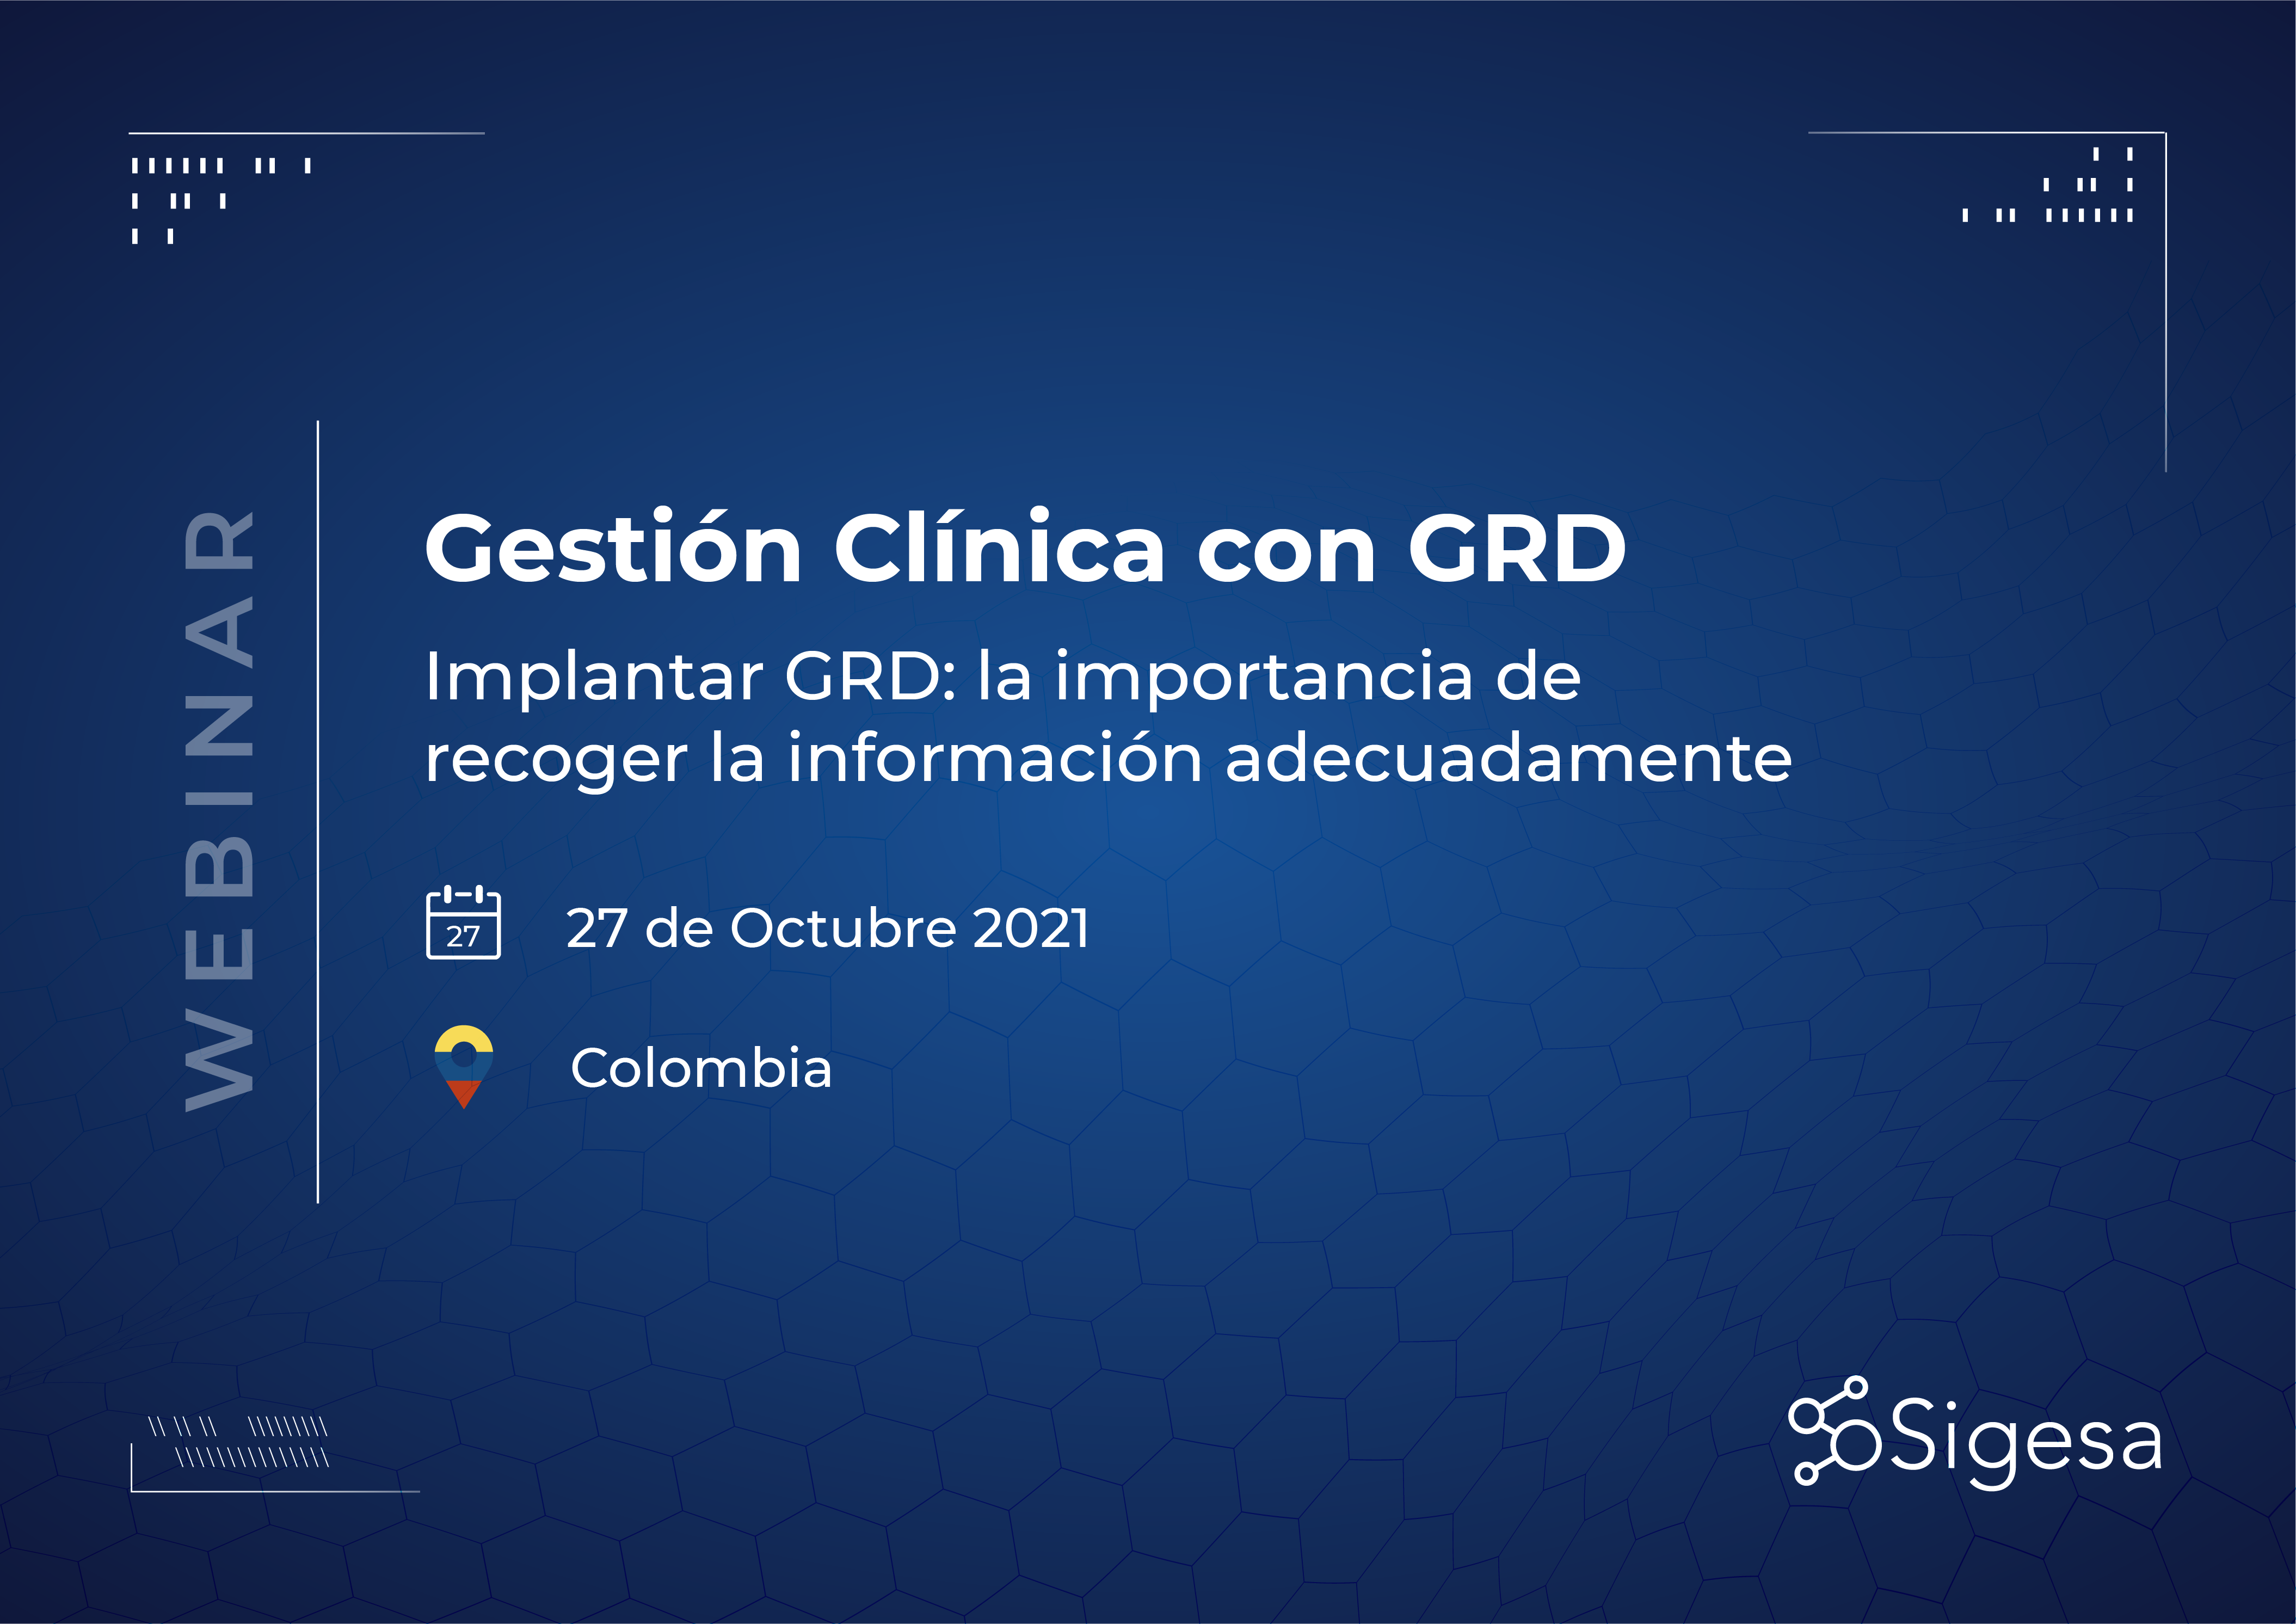 Colombia: Gestión Clínica con GRD.